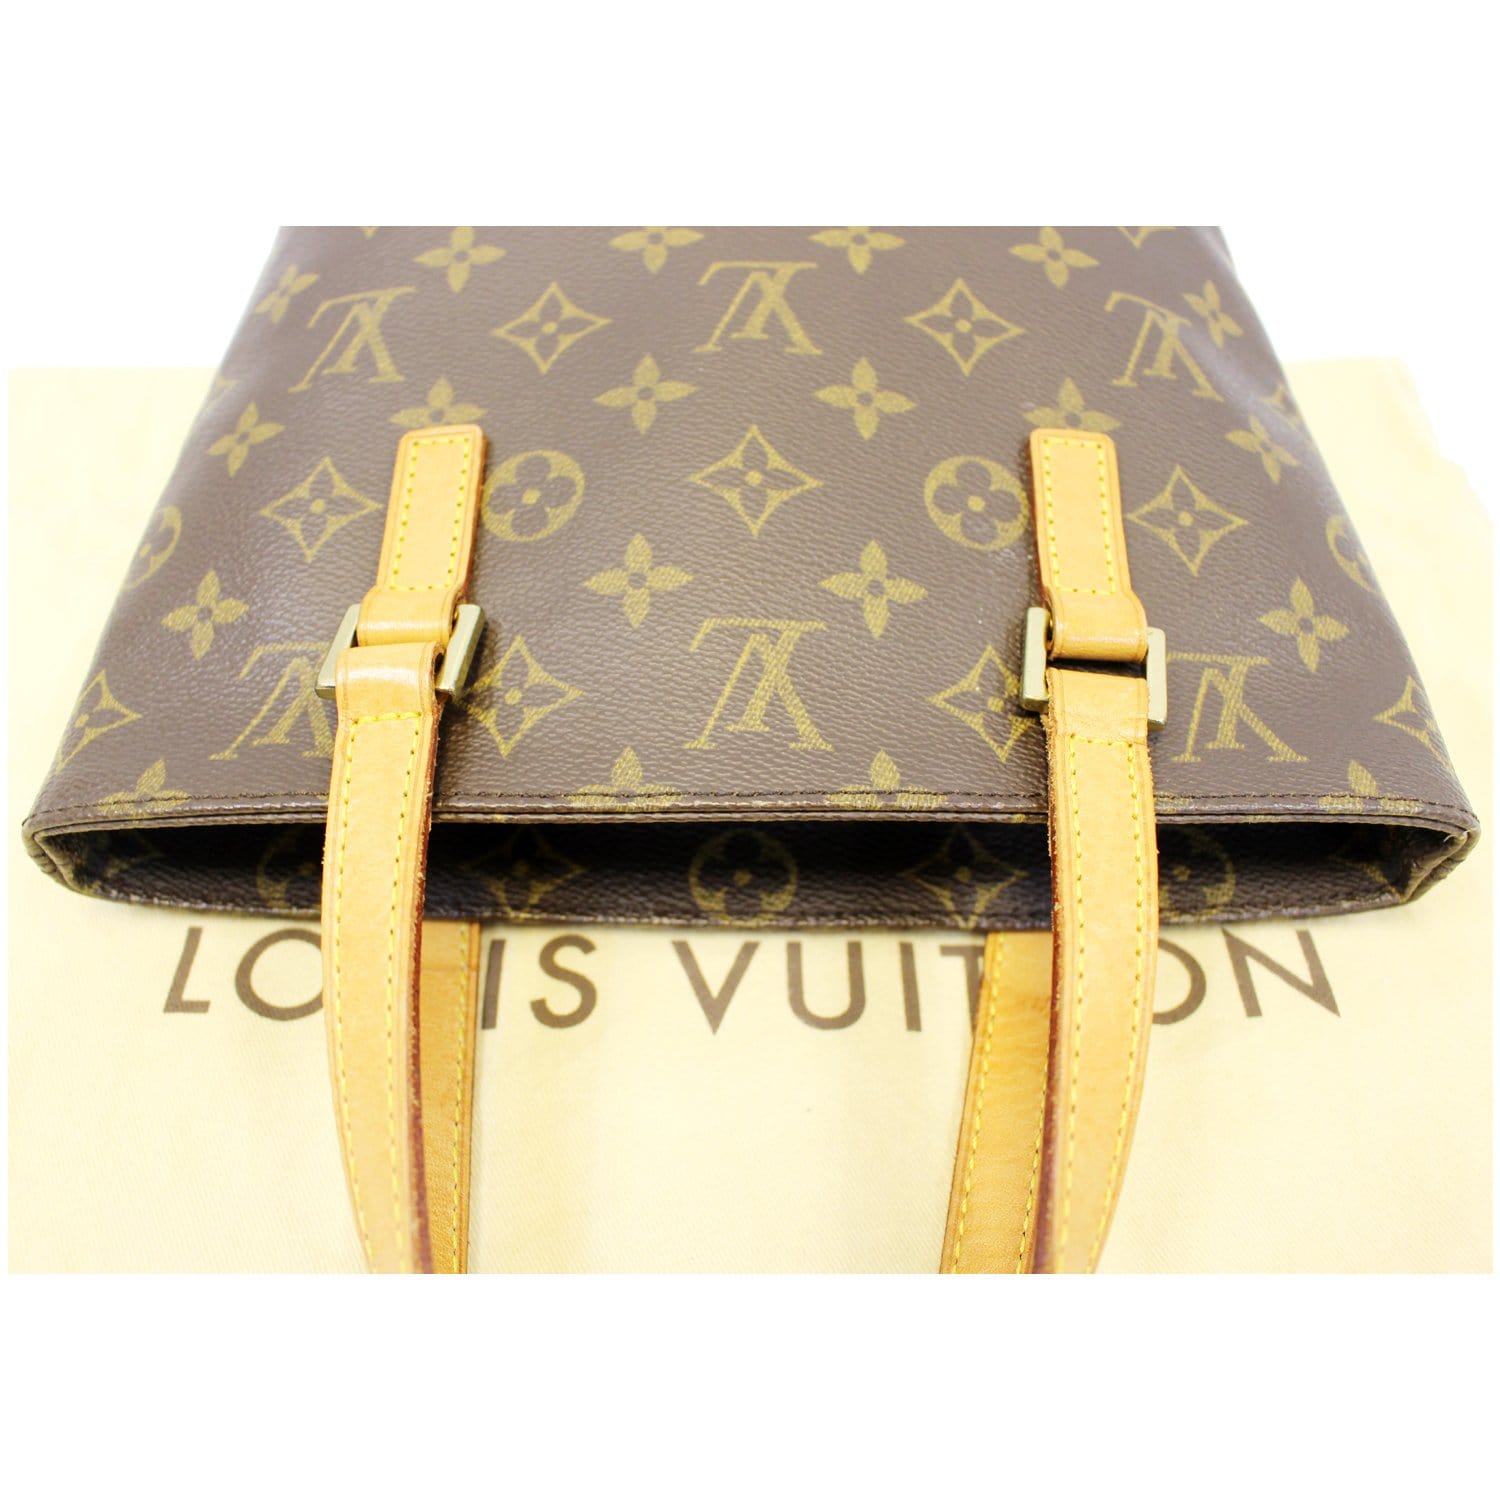 Louis Vuitton Vavin Tote Monogram Canvas PM - ShopStyle